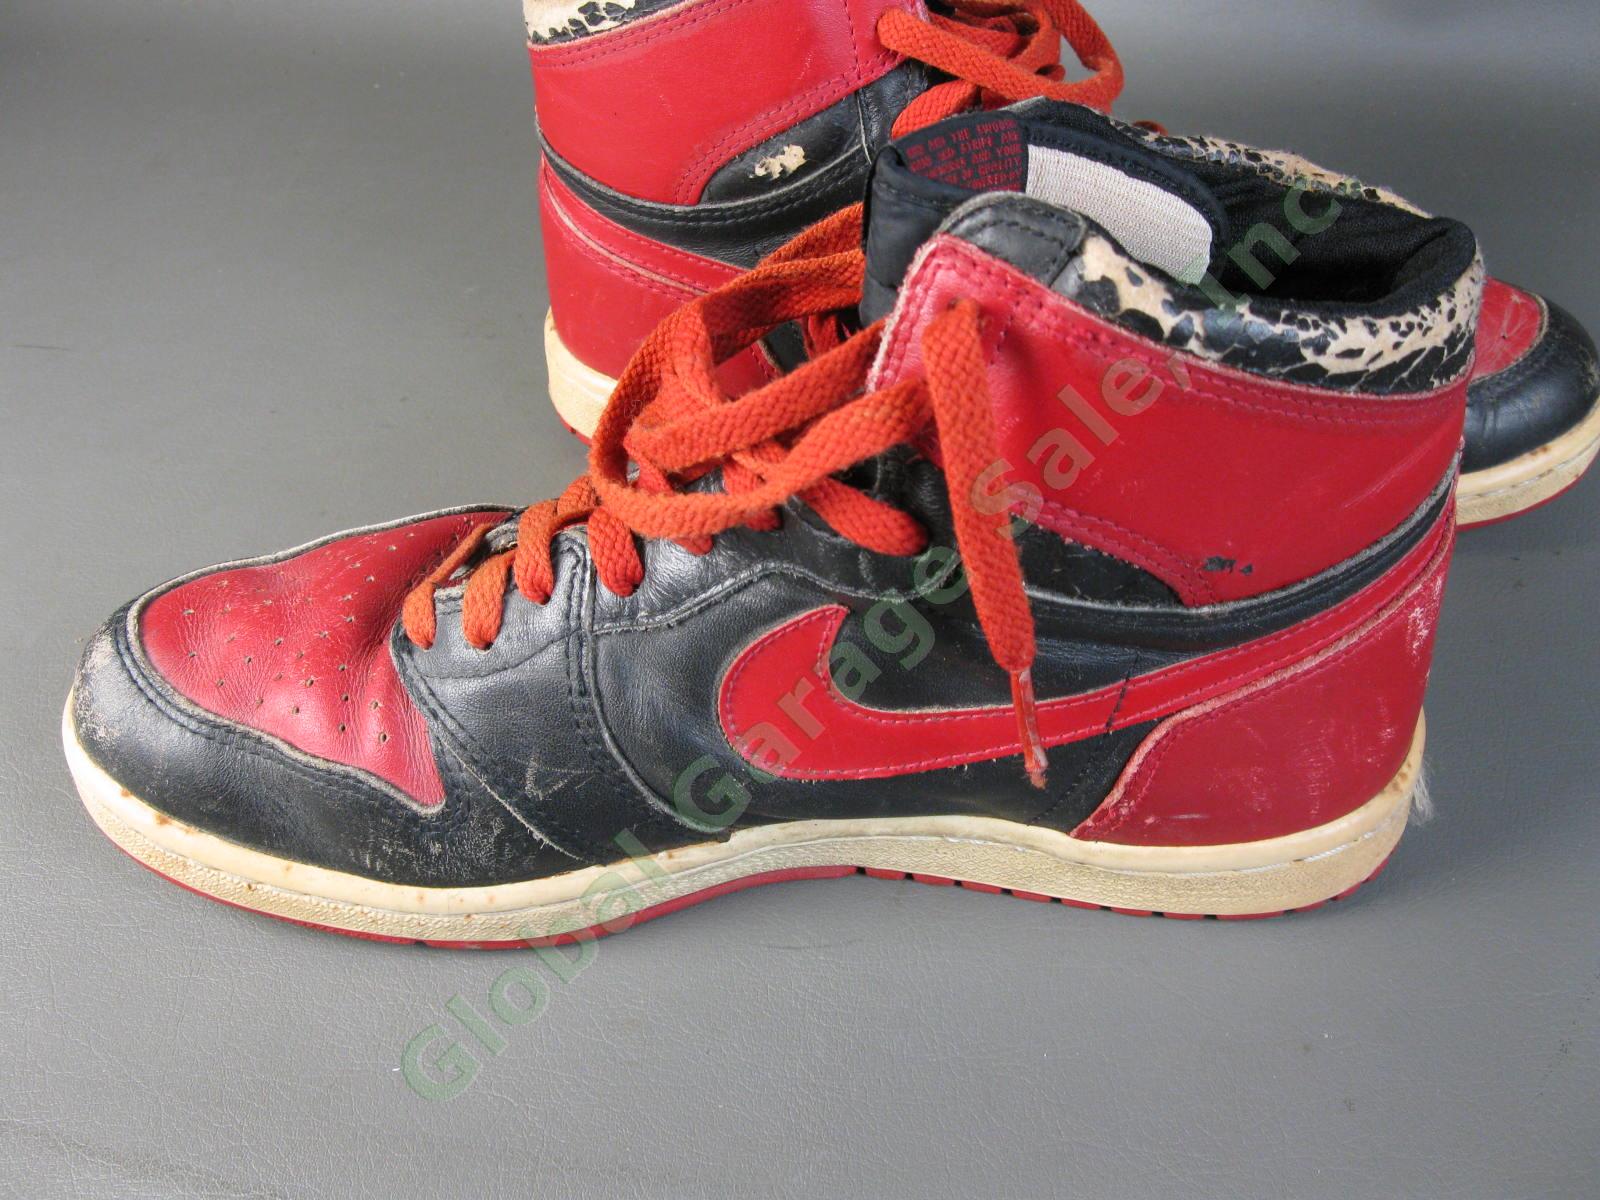 ORIGINAL 1985 Nike Air Jordan 1 Bred Black Red Chicago Bulls BANNED OG MJ AJI NR 13